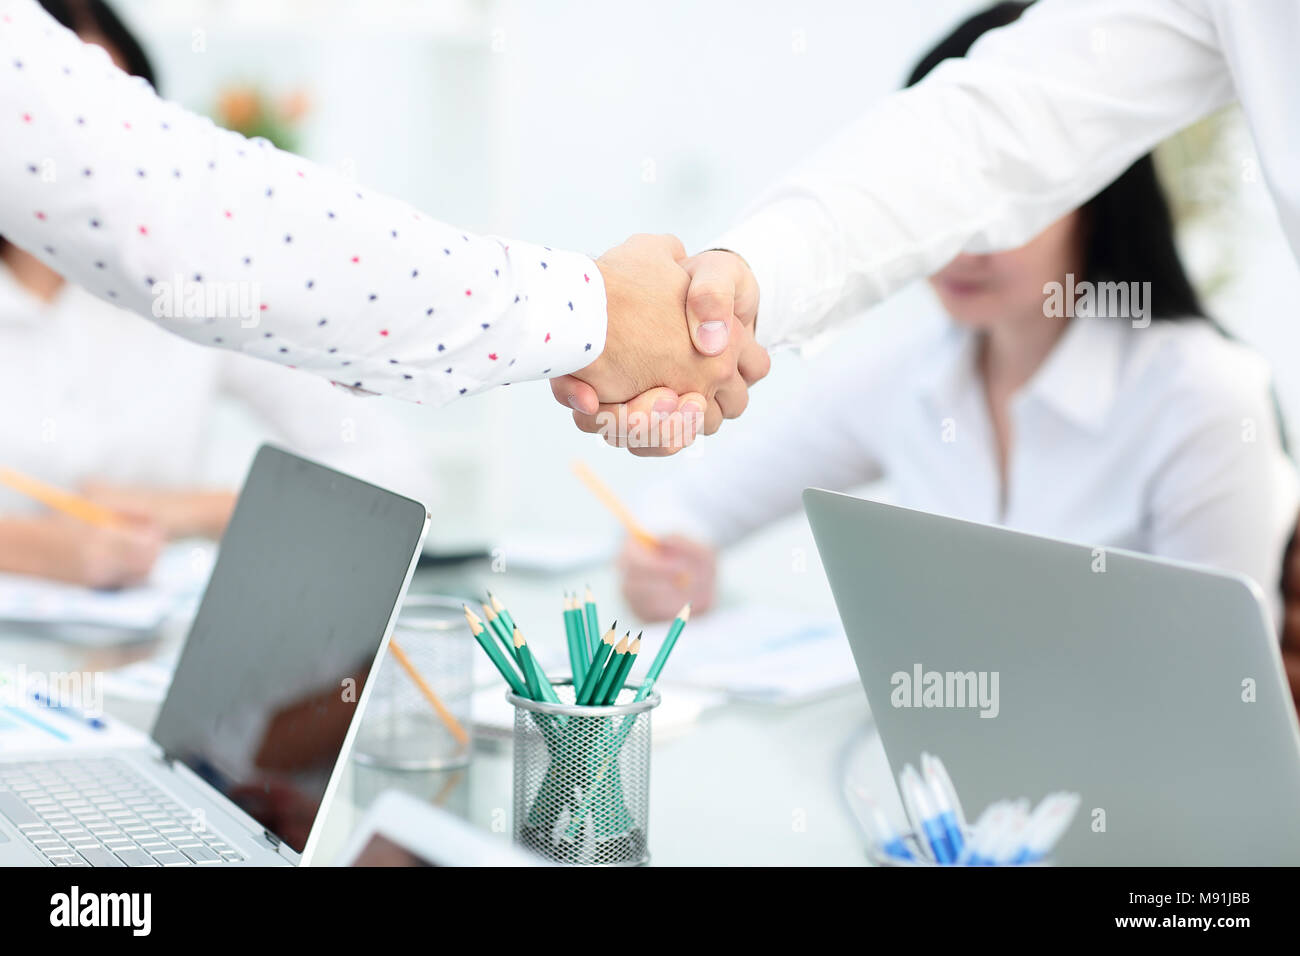 Business Meeting di partenariato concetto. Immagine businessmans handshake. Gli imprenditori di successo lo handshaking dopo un buon affare. Orizzontale, sfondo sfocato Foto Stock